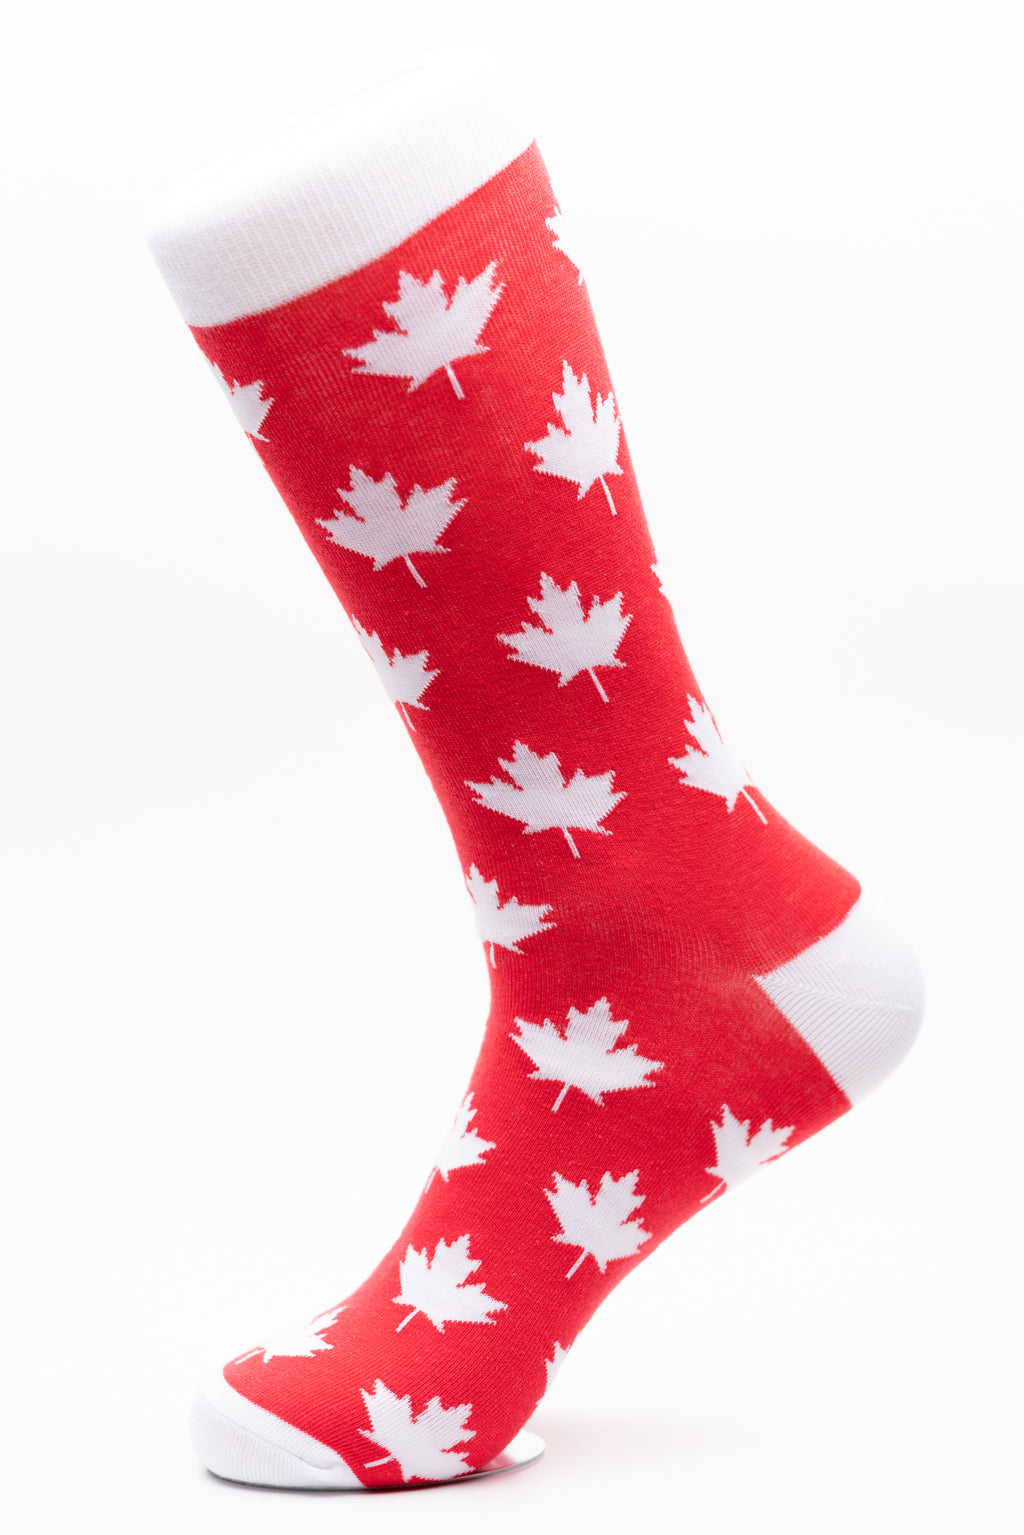 Canada Maple Leaf Crew Socks